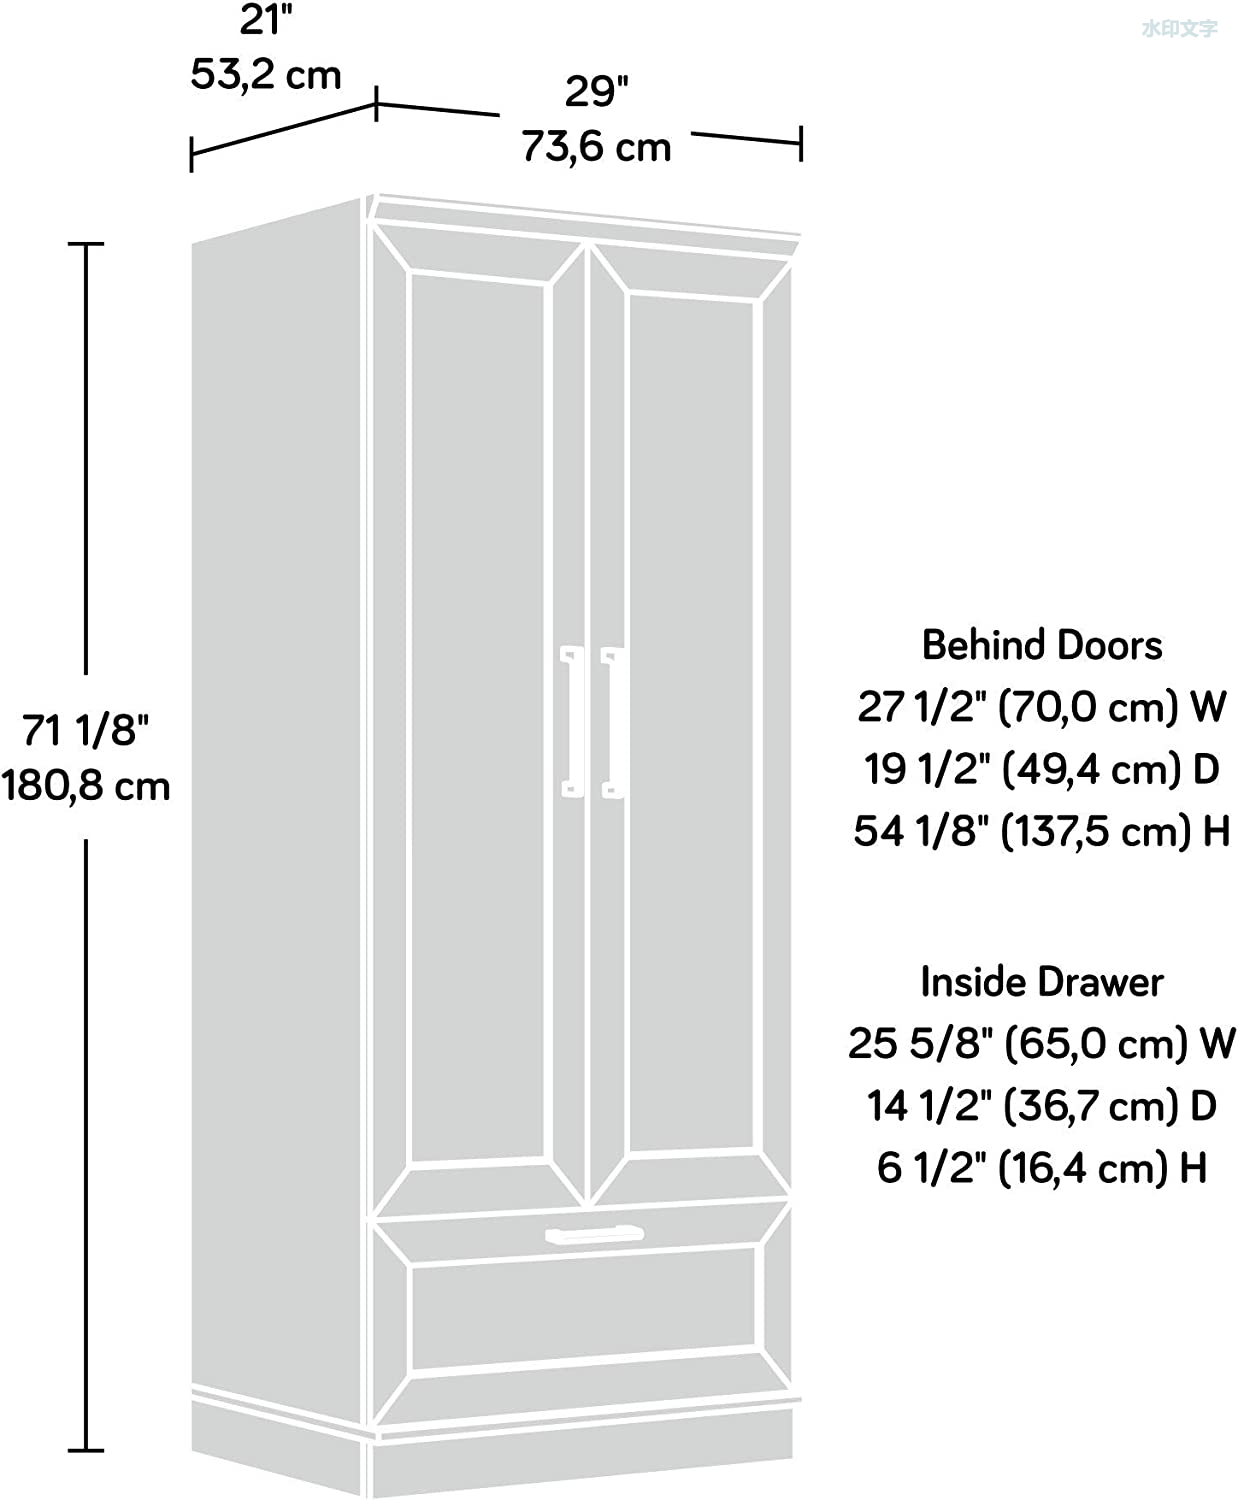 Armario con puertas con paneles enmarcados, largo: 28.98' x ancho: 20.95' x alto: 71.18', acabado en roble Dakota